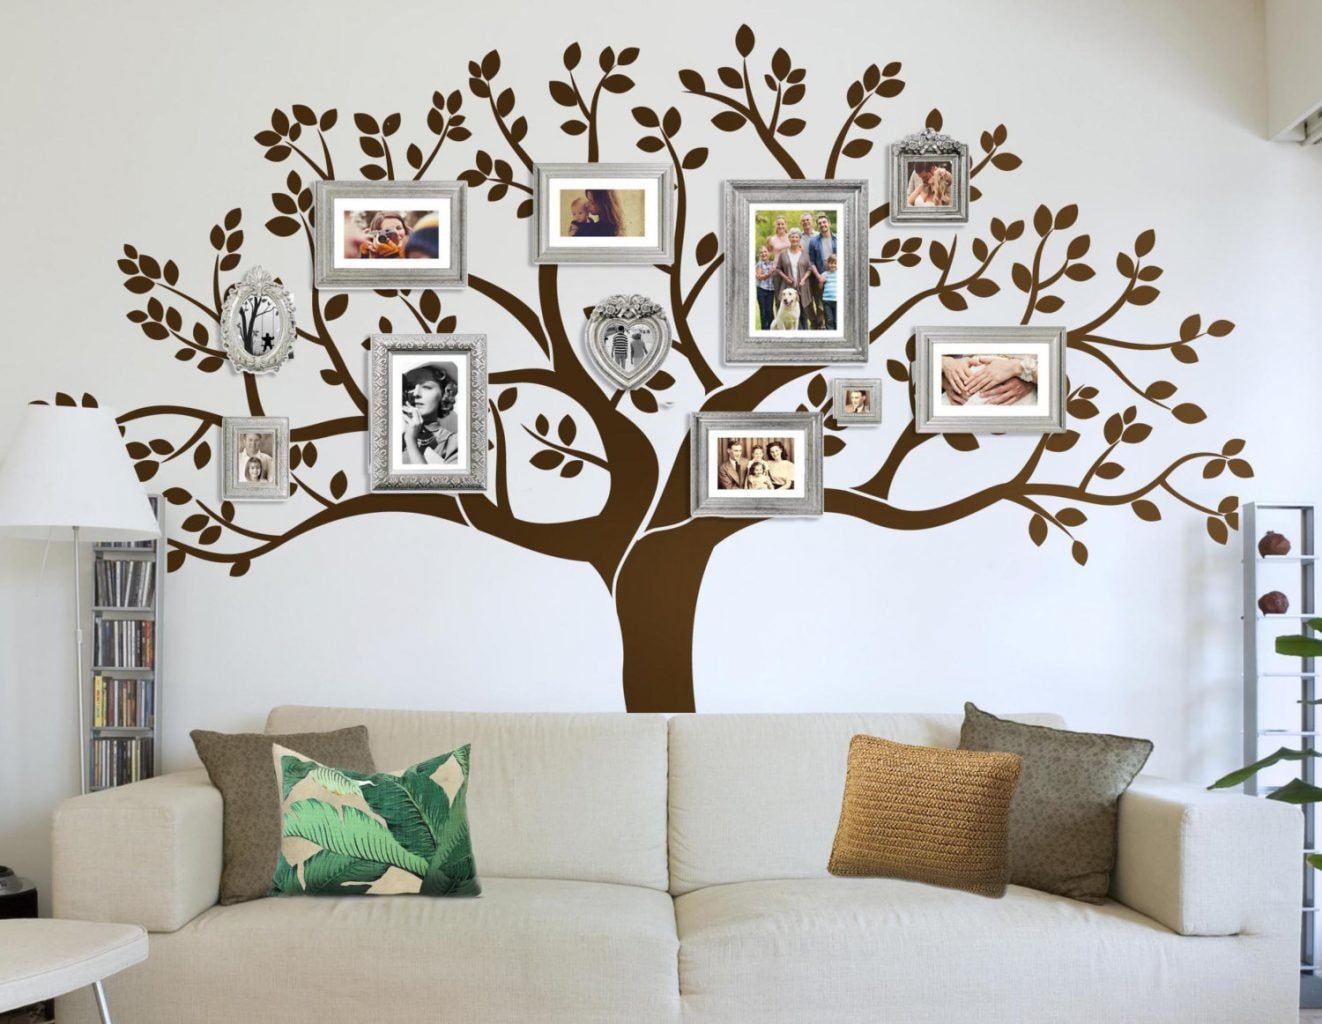 Декор из дерева для домашнего интерьера сделанный своими руками – фото, идеи, пошаговая инструкция